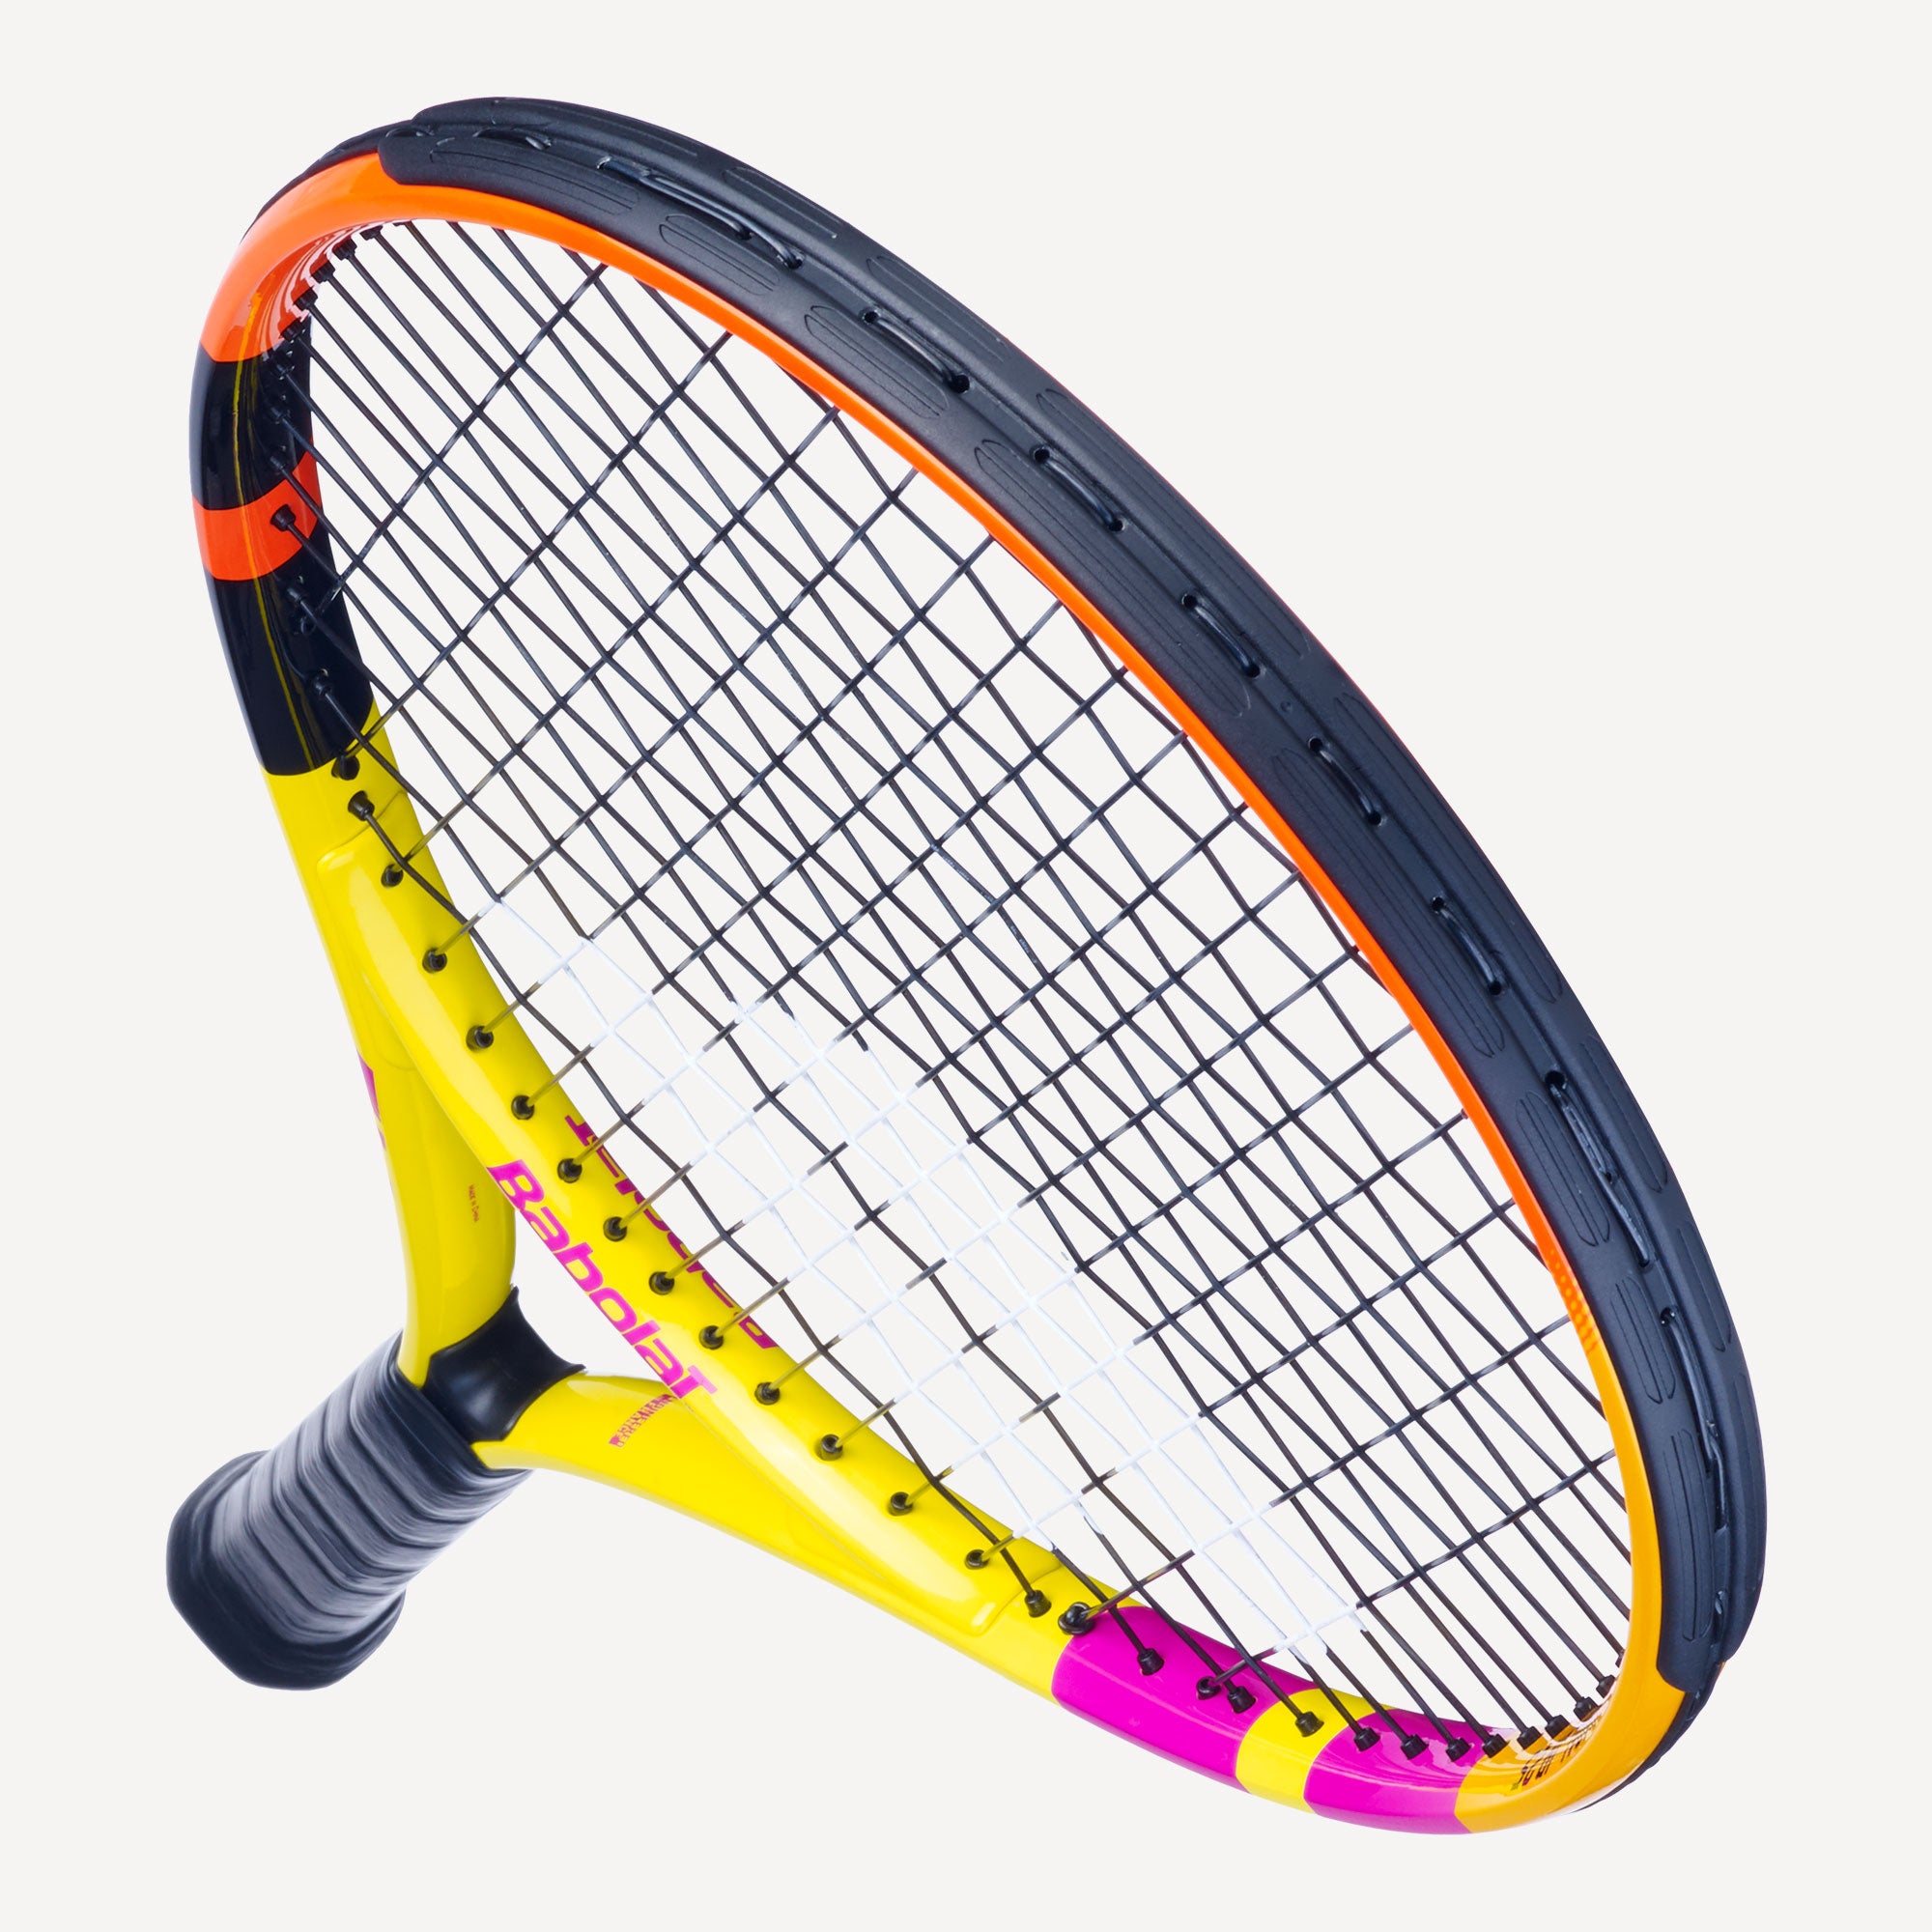 Babolat Rafa Nadal 25 Junior Tennis Racket 5